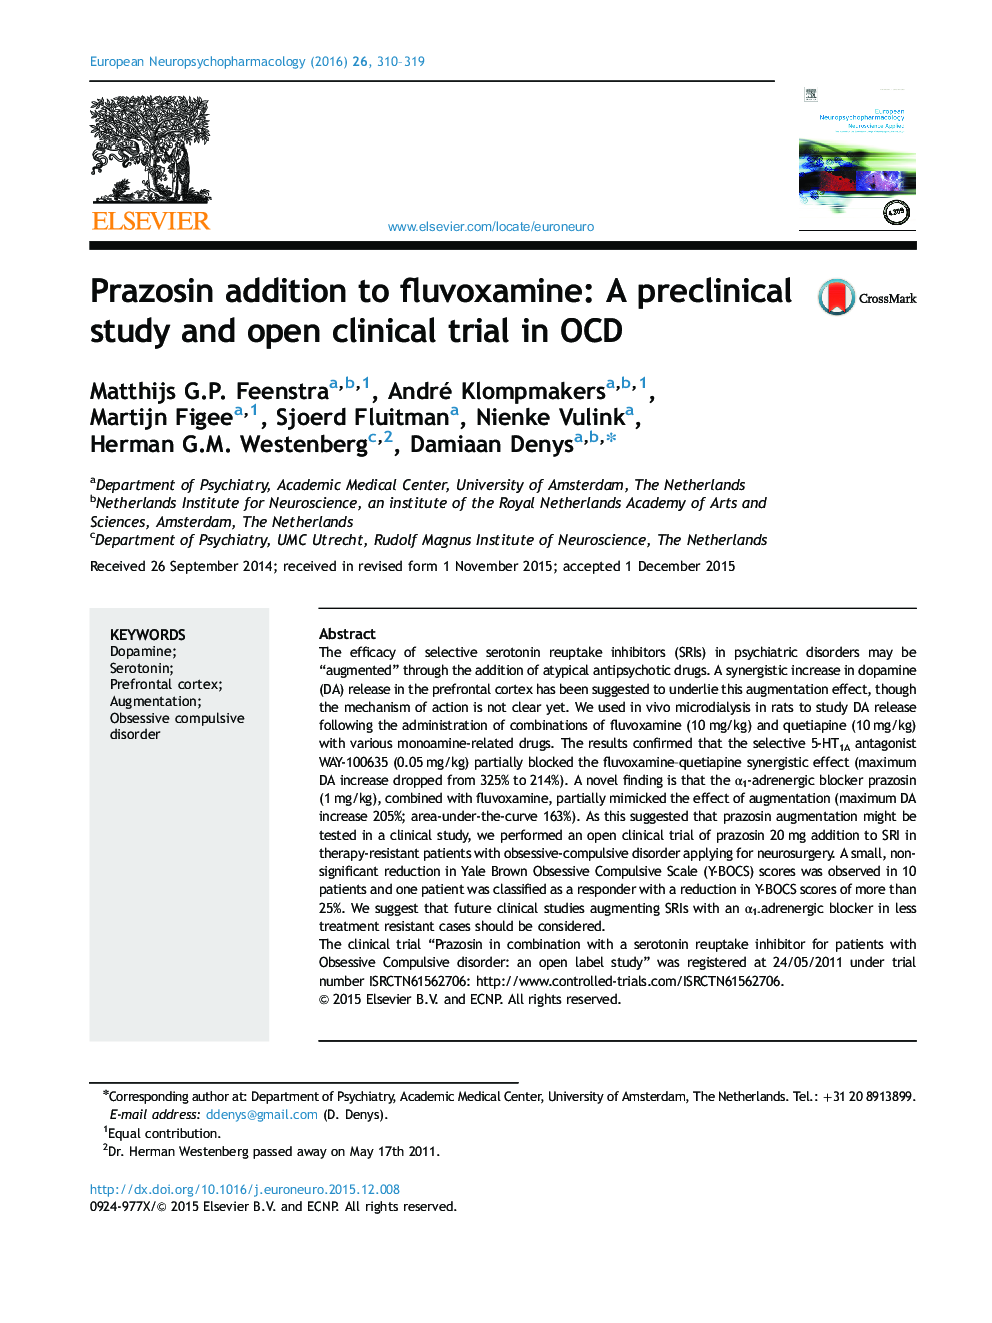 افزونه پرازوسین به فلووکسامین: مطالعه بالینی و آزمایش بالینی باز در OCD